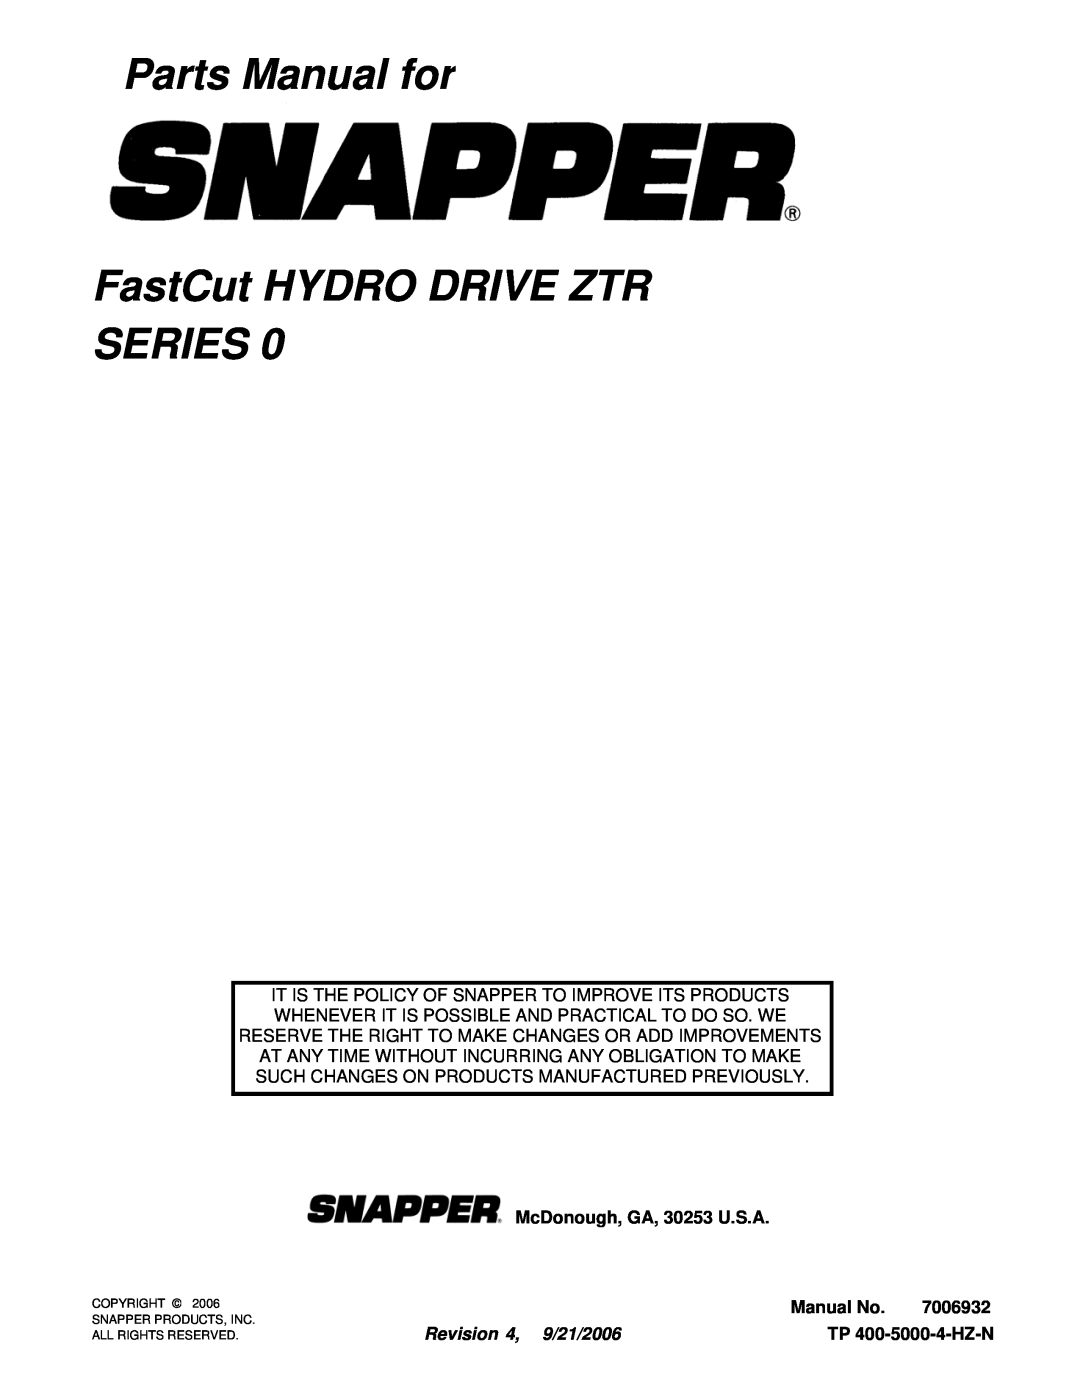 Snapper ZT18440KH manual Parts Manual for FastCut HYDRO DRIVE ZTR SERIES, McDonough, GA, 30253 U.S.A, Manual No, 7006932 